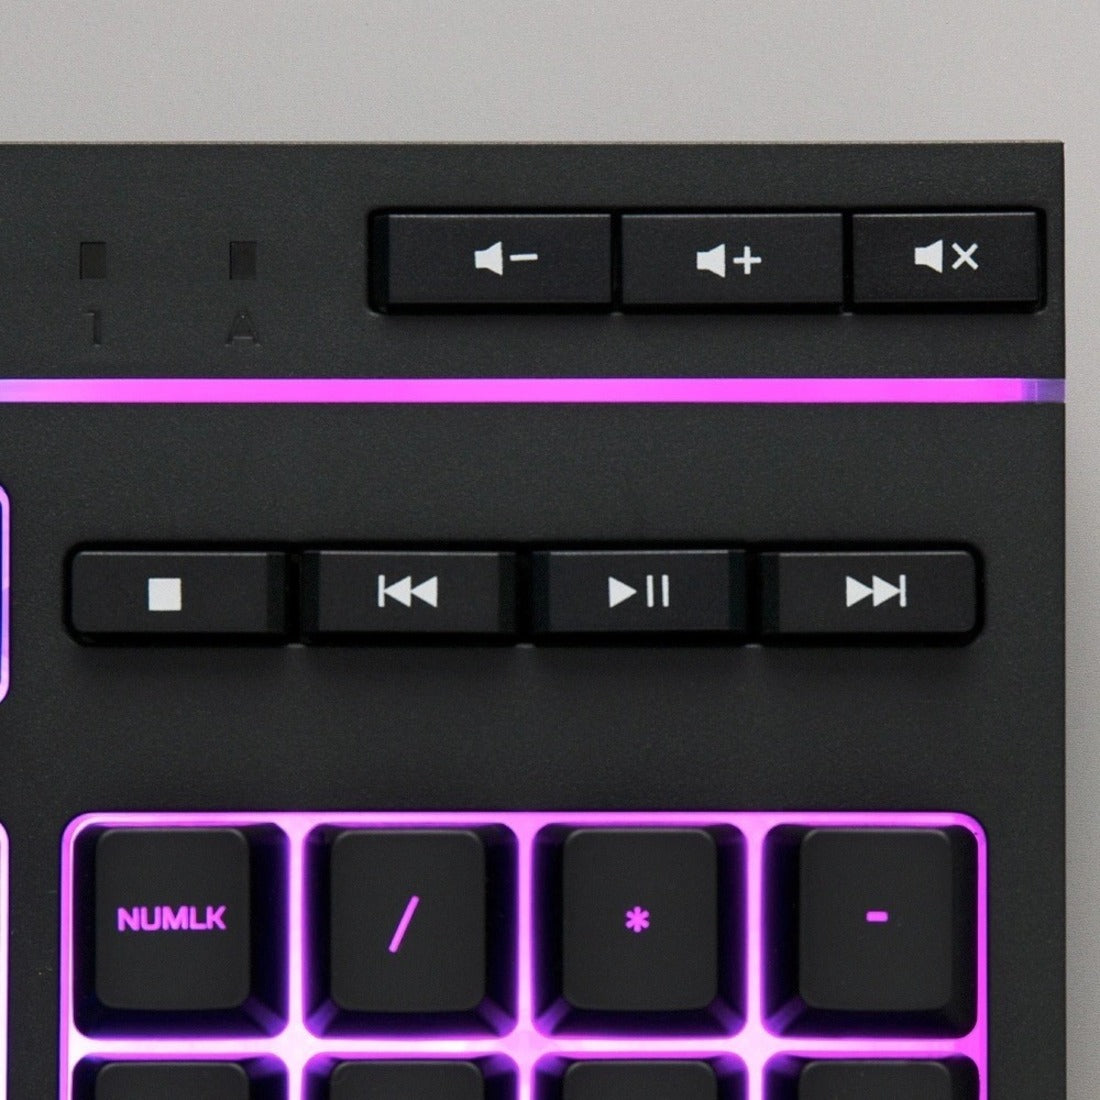 品牌名：HyperX  键盘类型：机械键盘  布局：美国标准  背光：有  尺寸：全尺寸  按键：静音